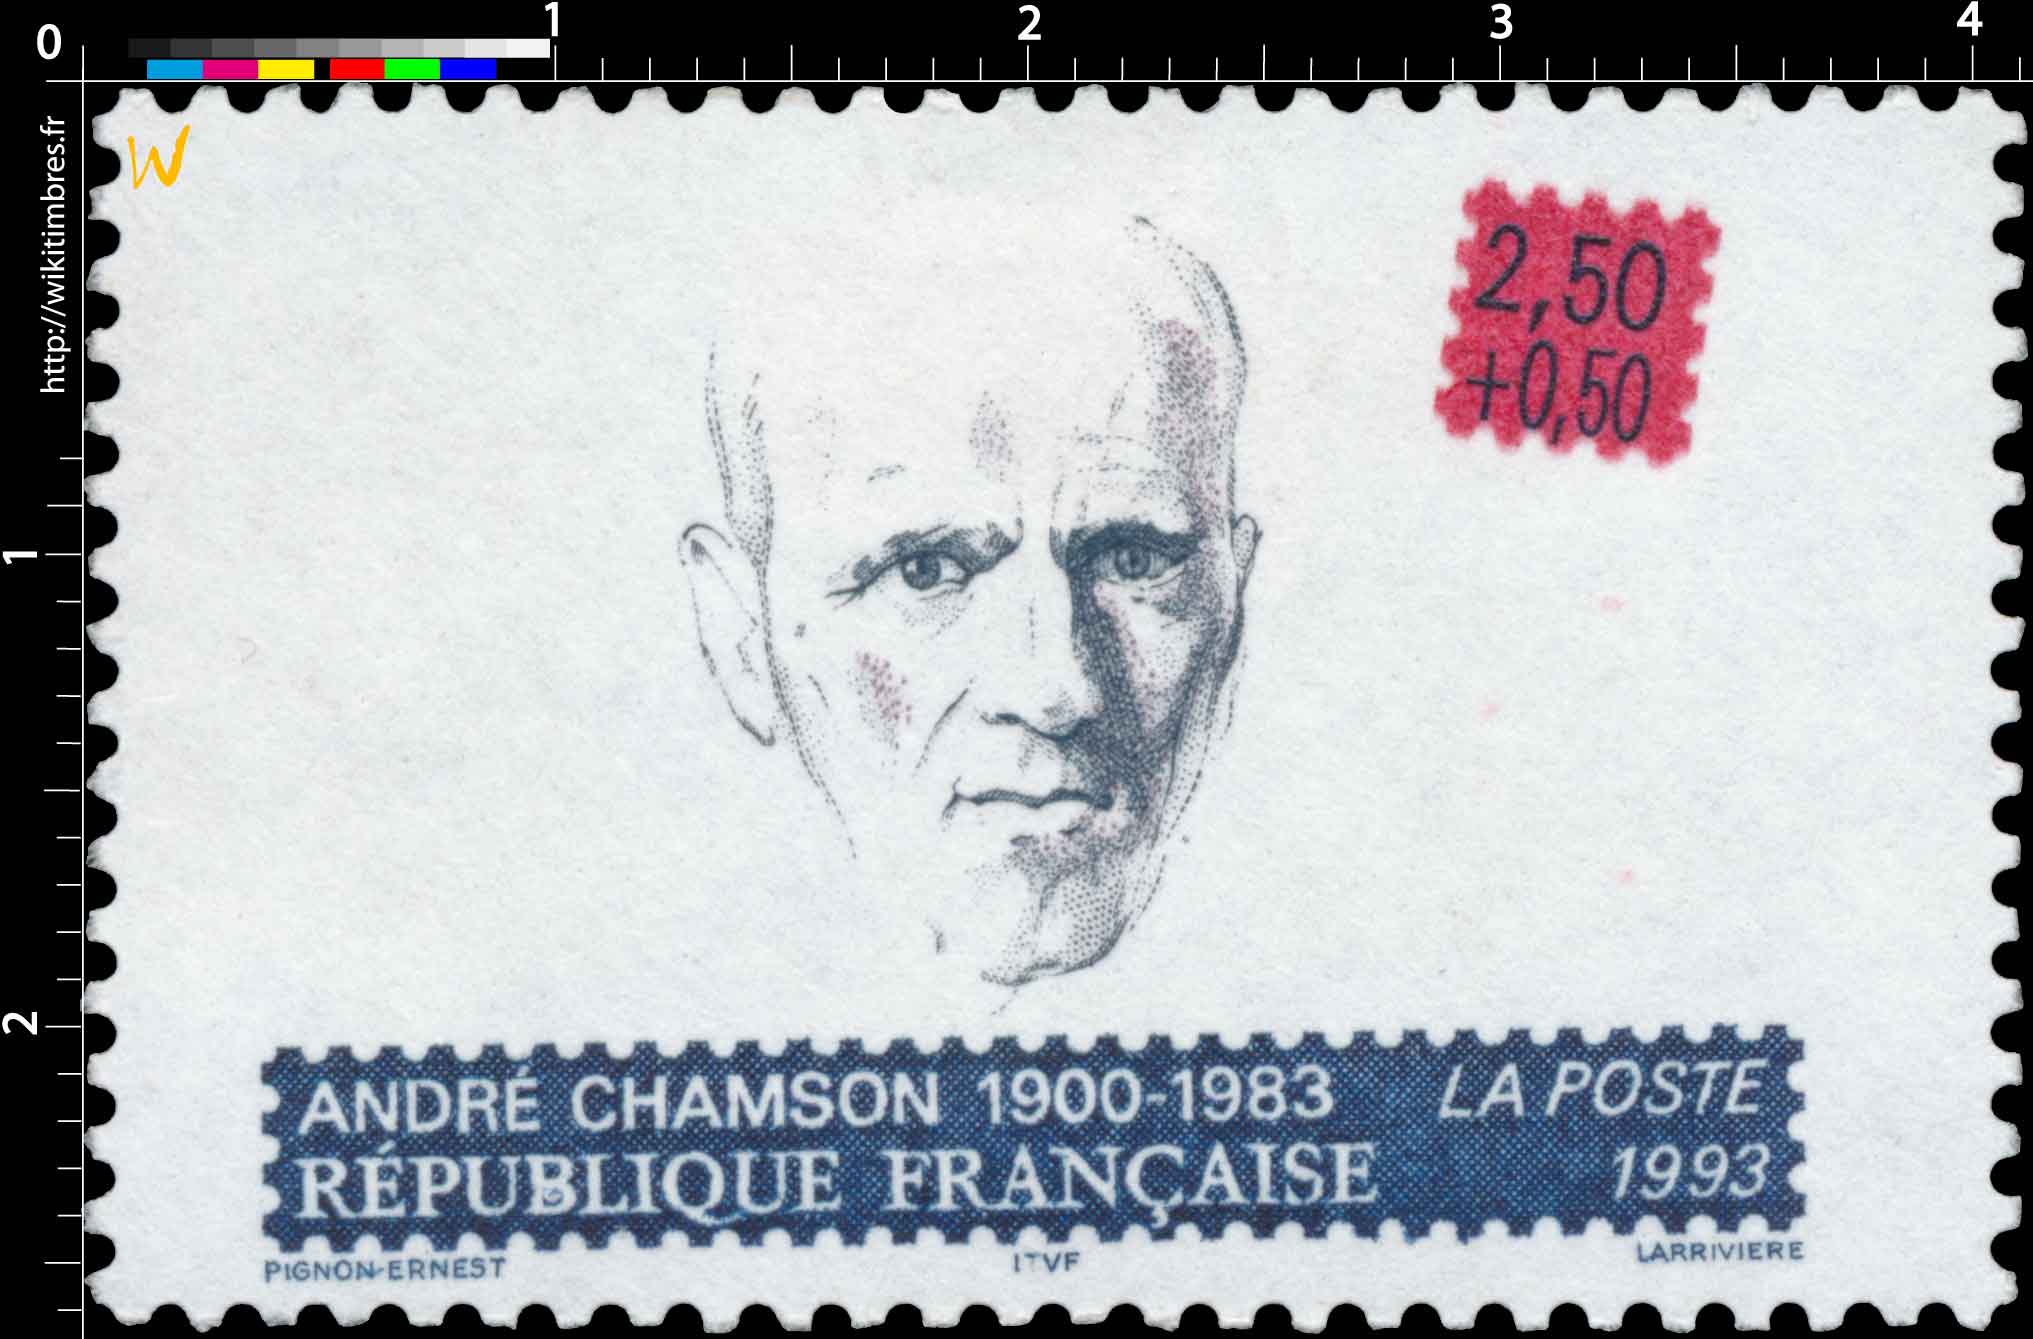 1993 ANDRÉ CHAMSON 1900-1983